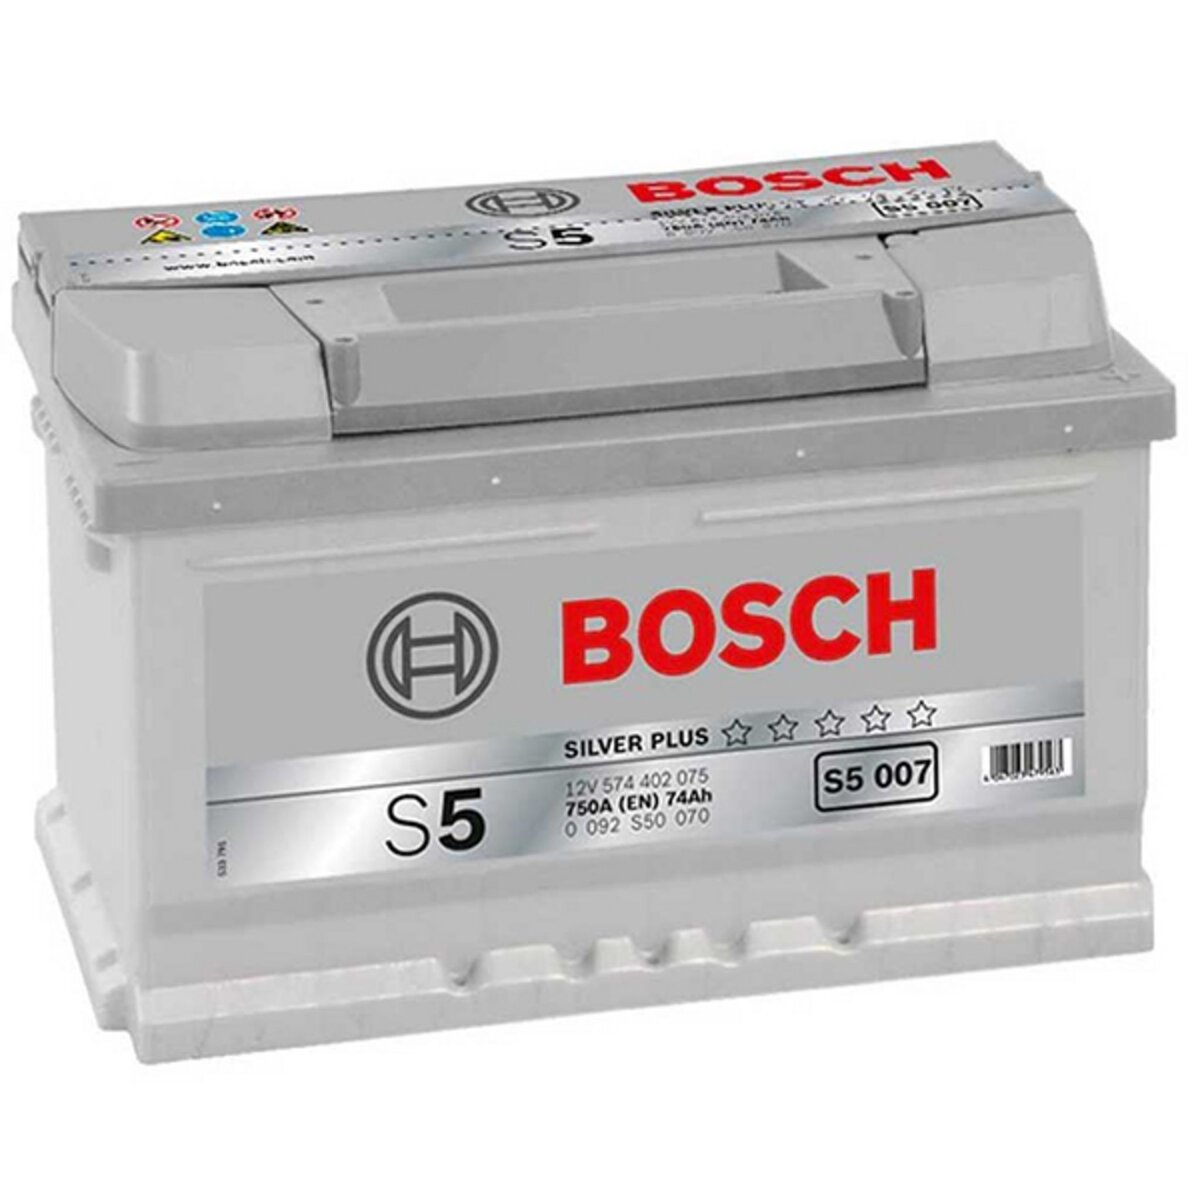 BOSCH Batterie Bosch S5007 74Ah 750A BOSCH pas cher 